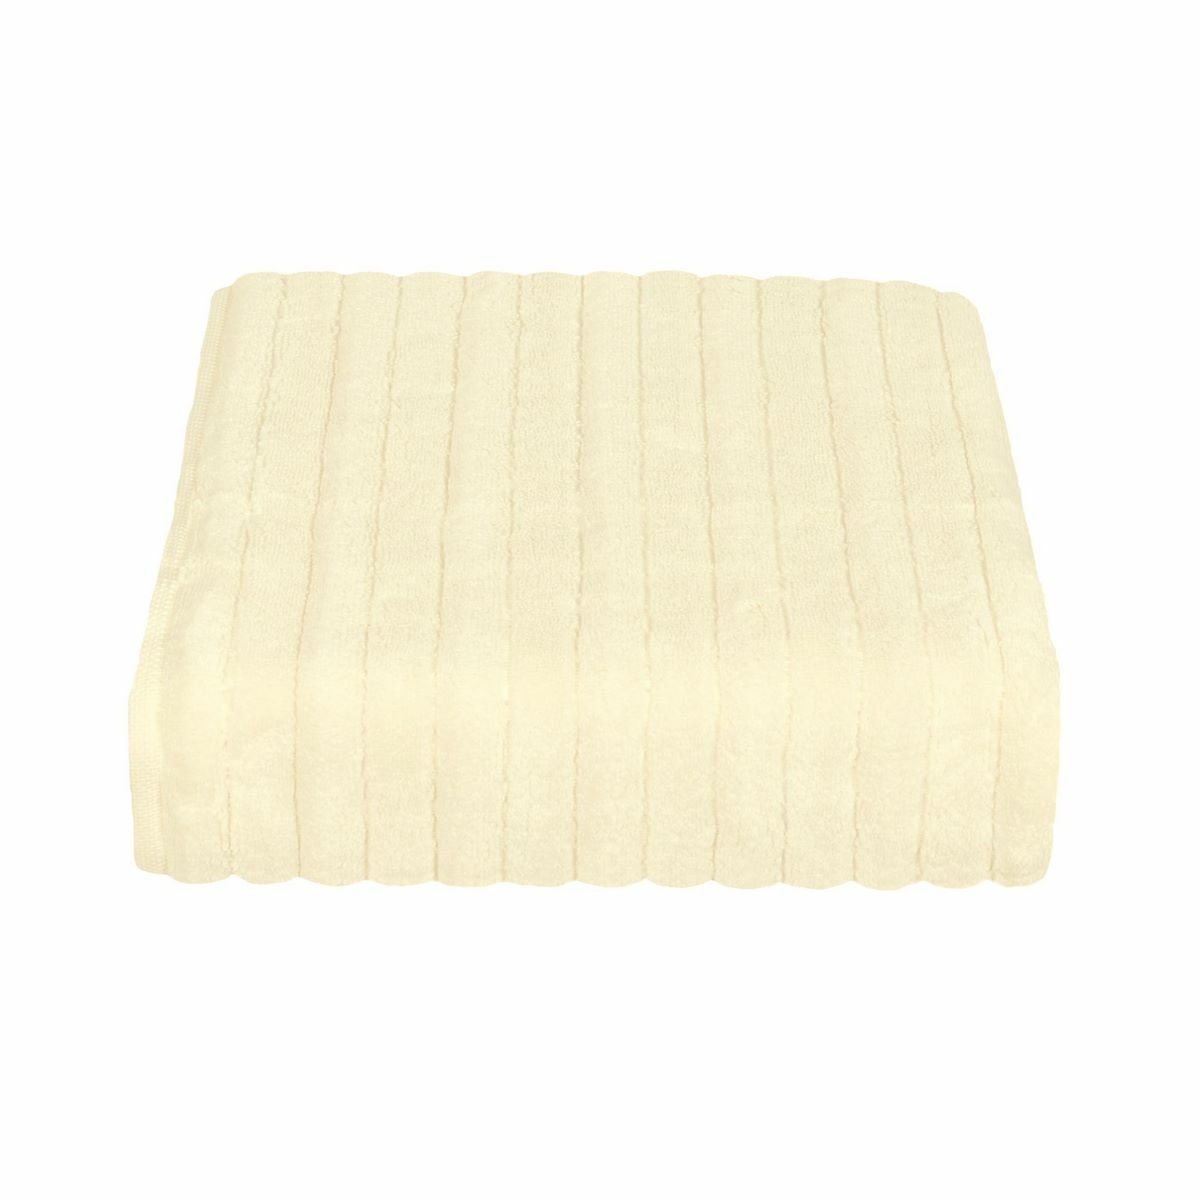 Ręcznik mikrobavlna DELUXE kremowy, 50 x 95 cm, 50 x 95 cm